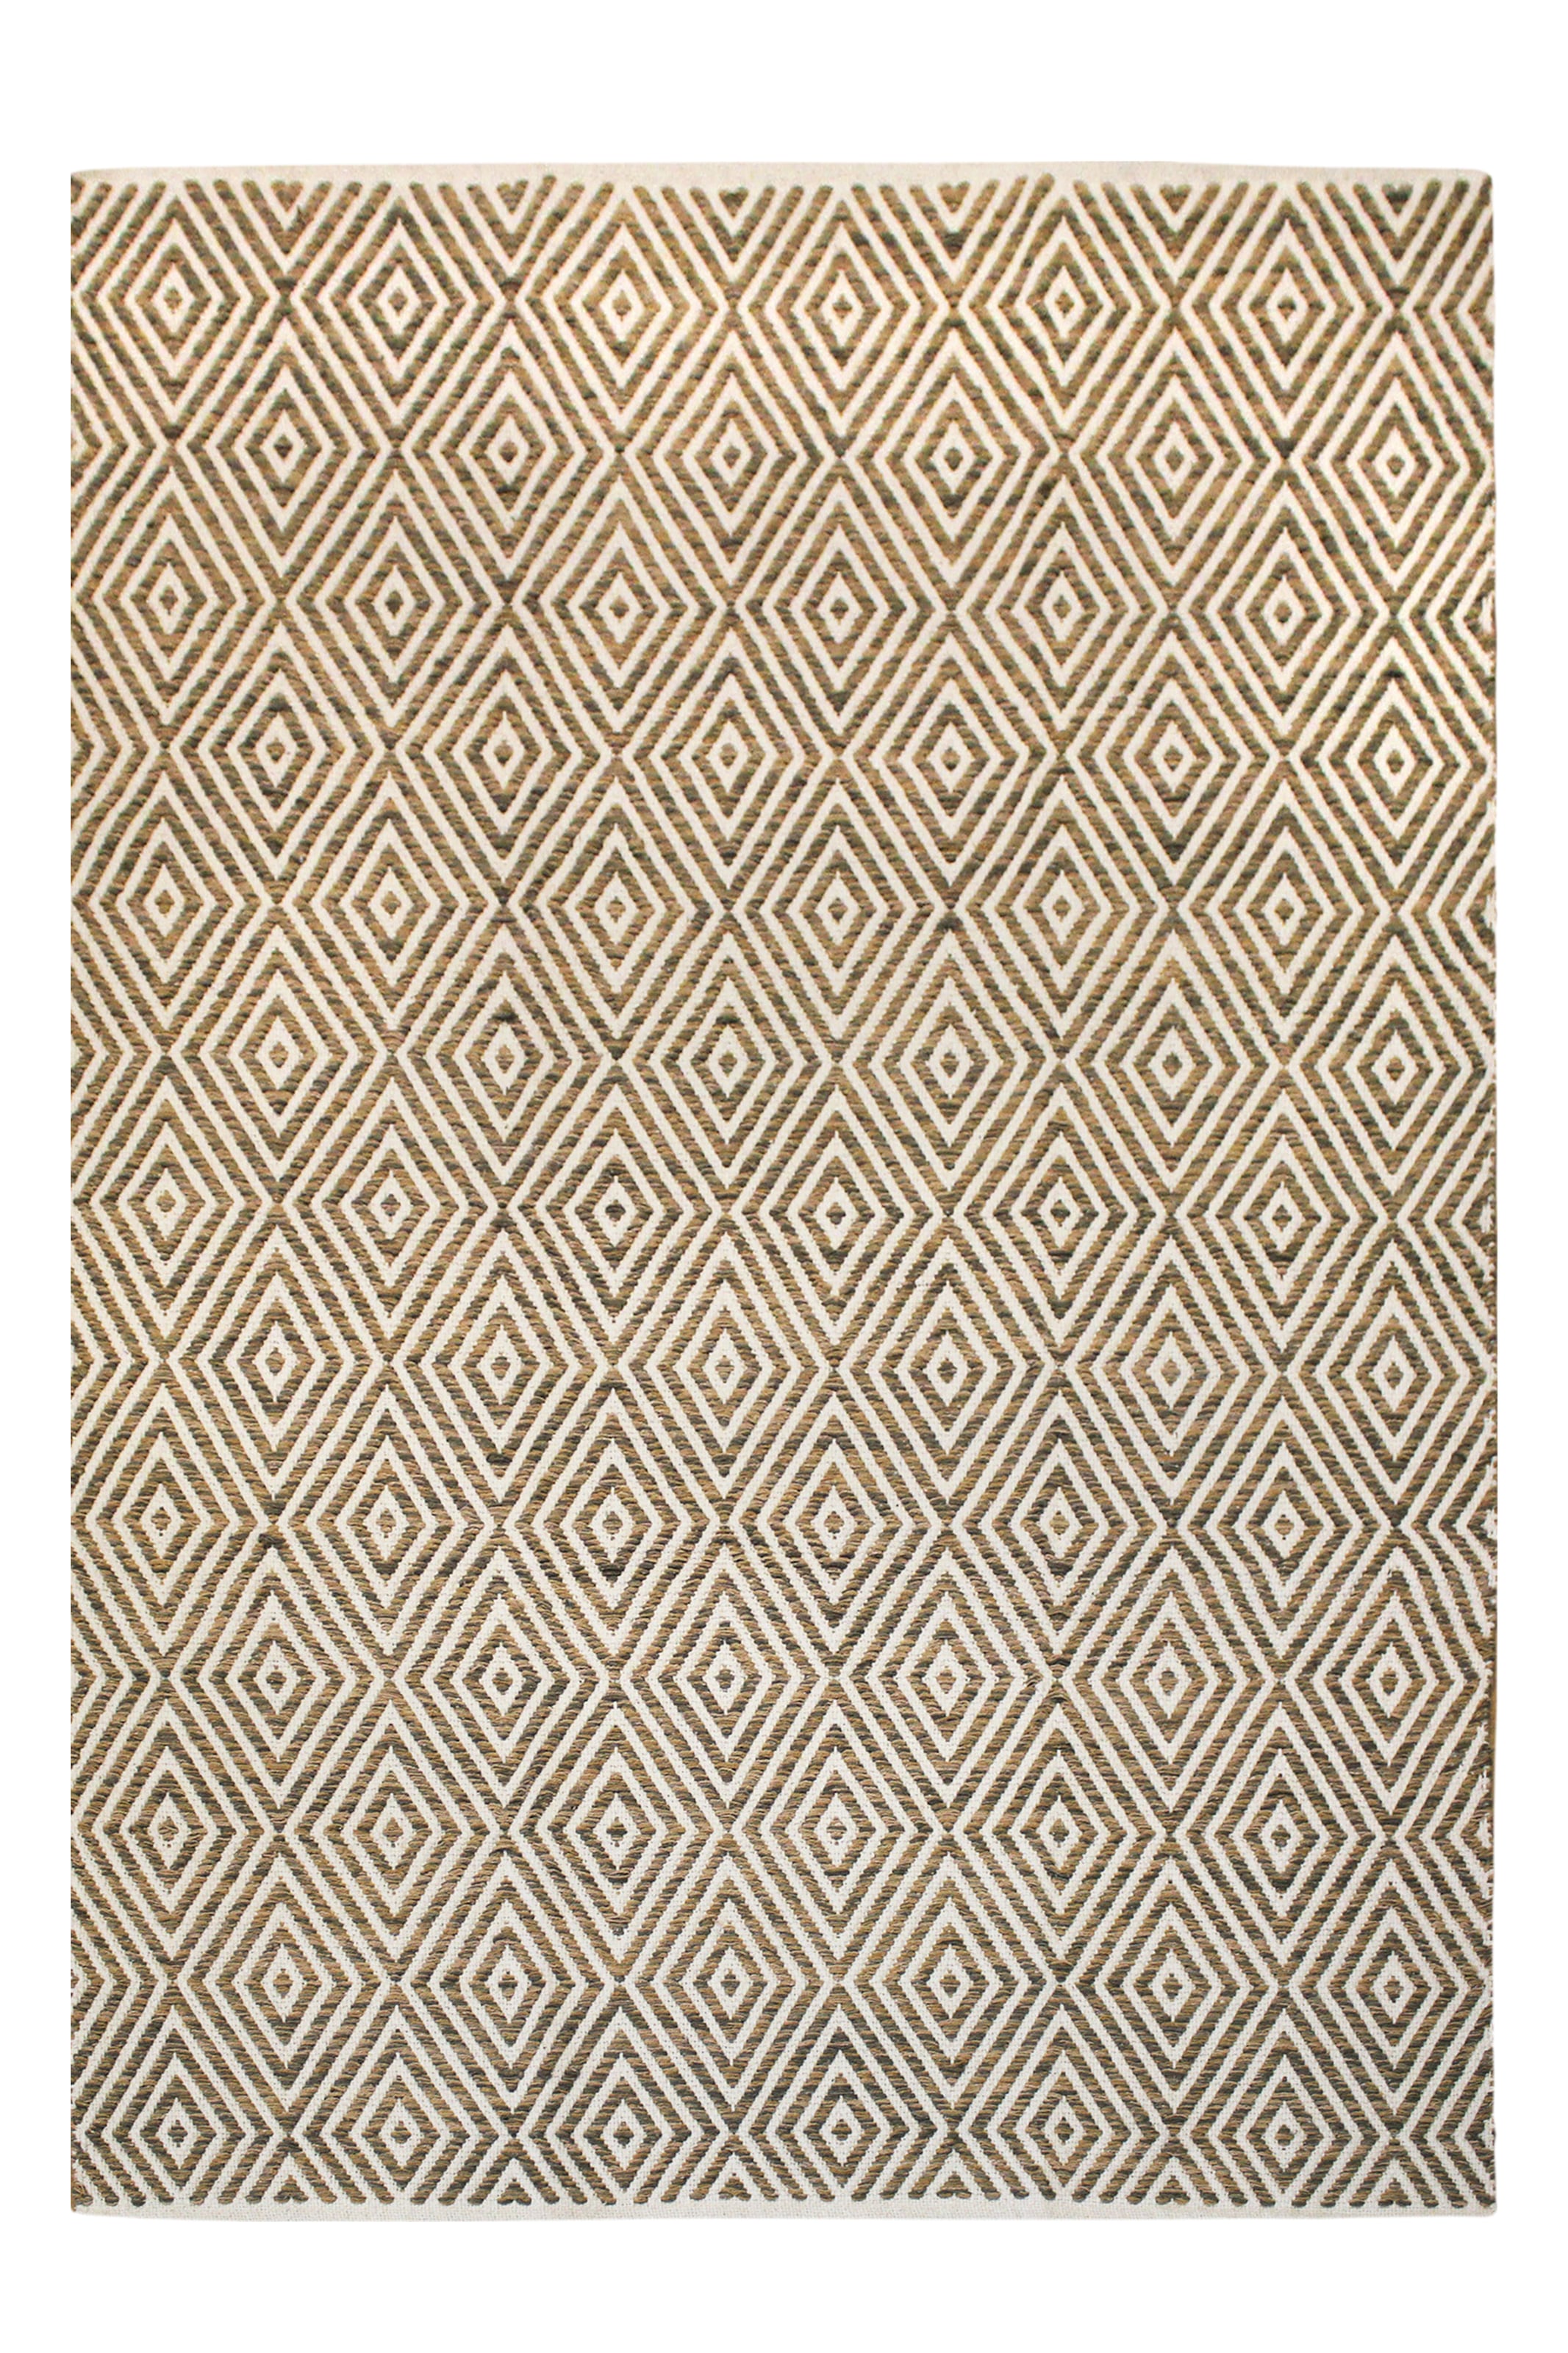 Kayoom Teppich »Aperitif 310«, rechteckig, weiche Haptik, fusselarm, für Allergiker, 80 % Baumwolle, Schlafzimmer